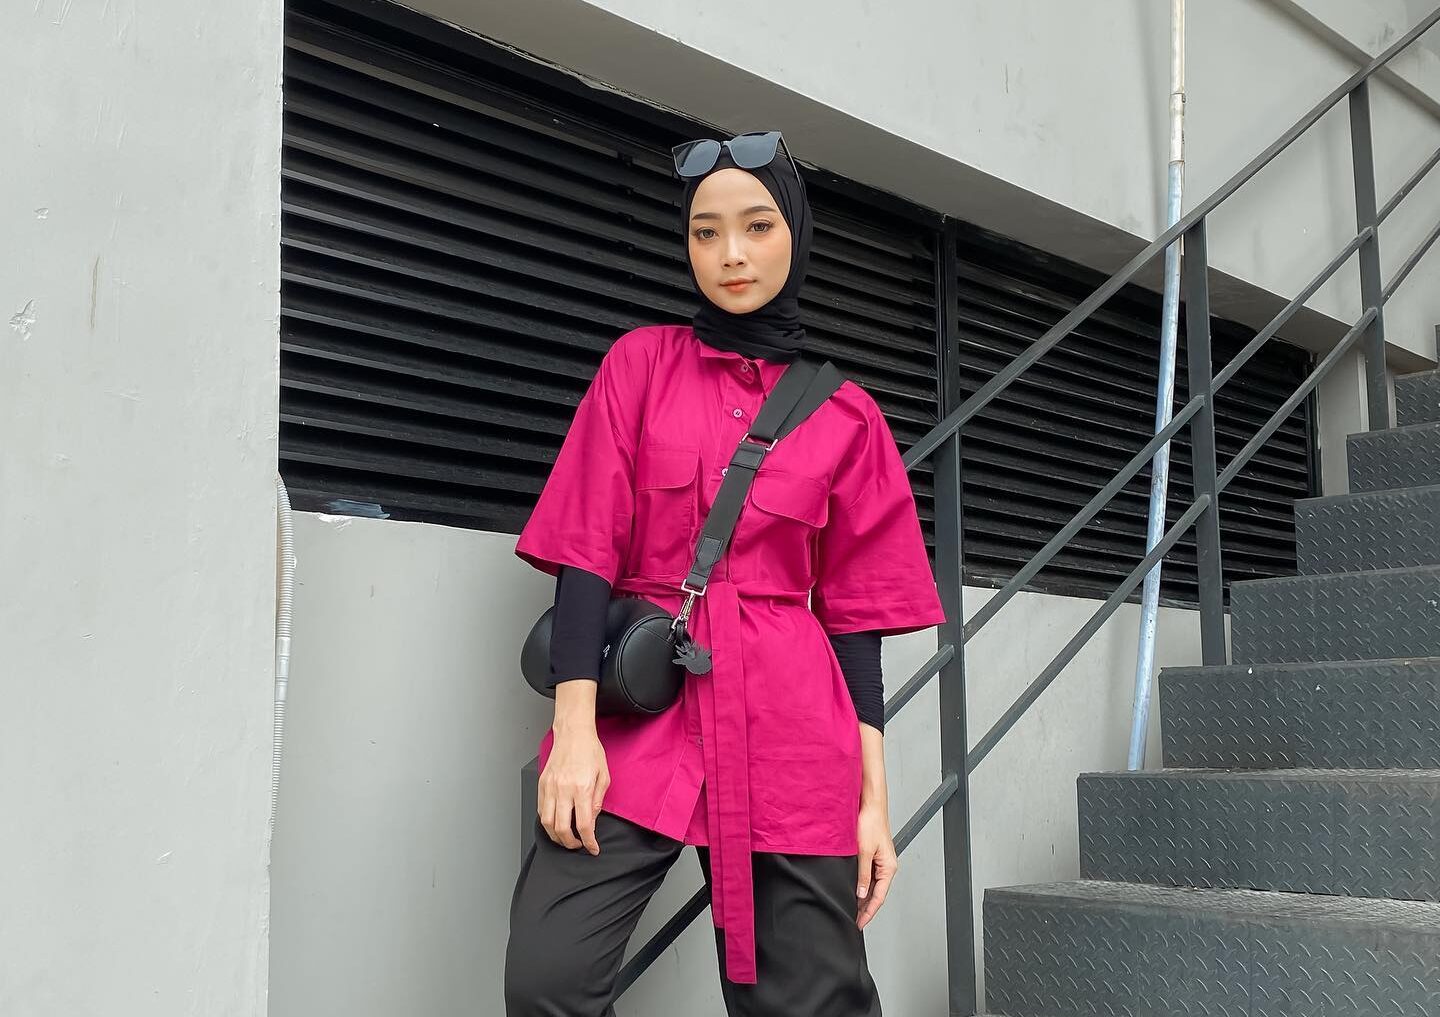 Wanita Indonesia mengenakan jilbab hitam di atas pakaian merah muda atau fuchsia.